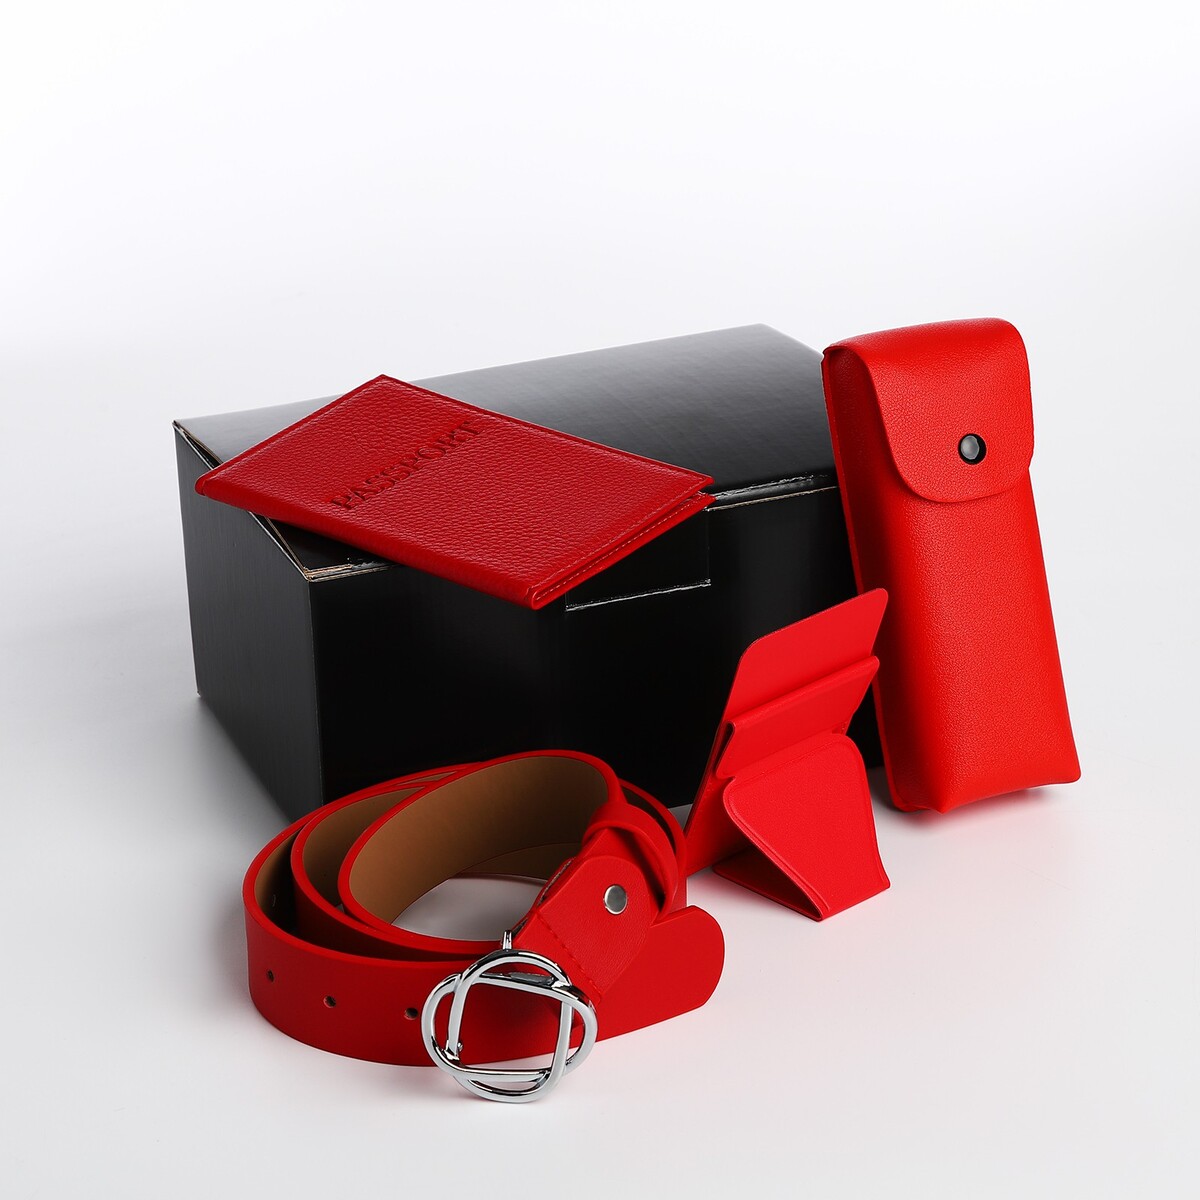 Подарочный набор, ремень с винтом, картхолдер на телефон, обложка для паспорта, футляр для очков, цвет красный набор для очков шнурок футляр салфетка